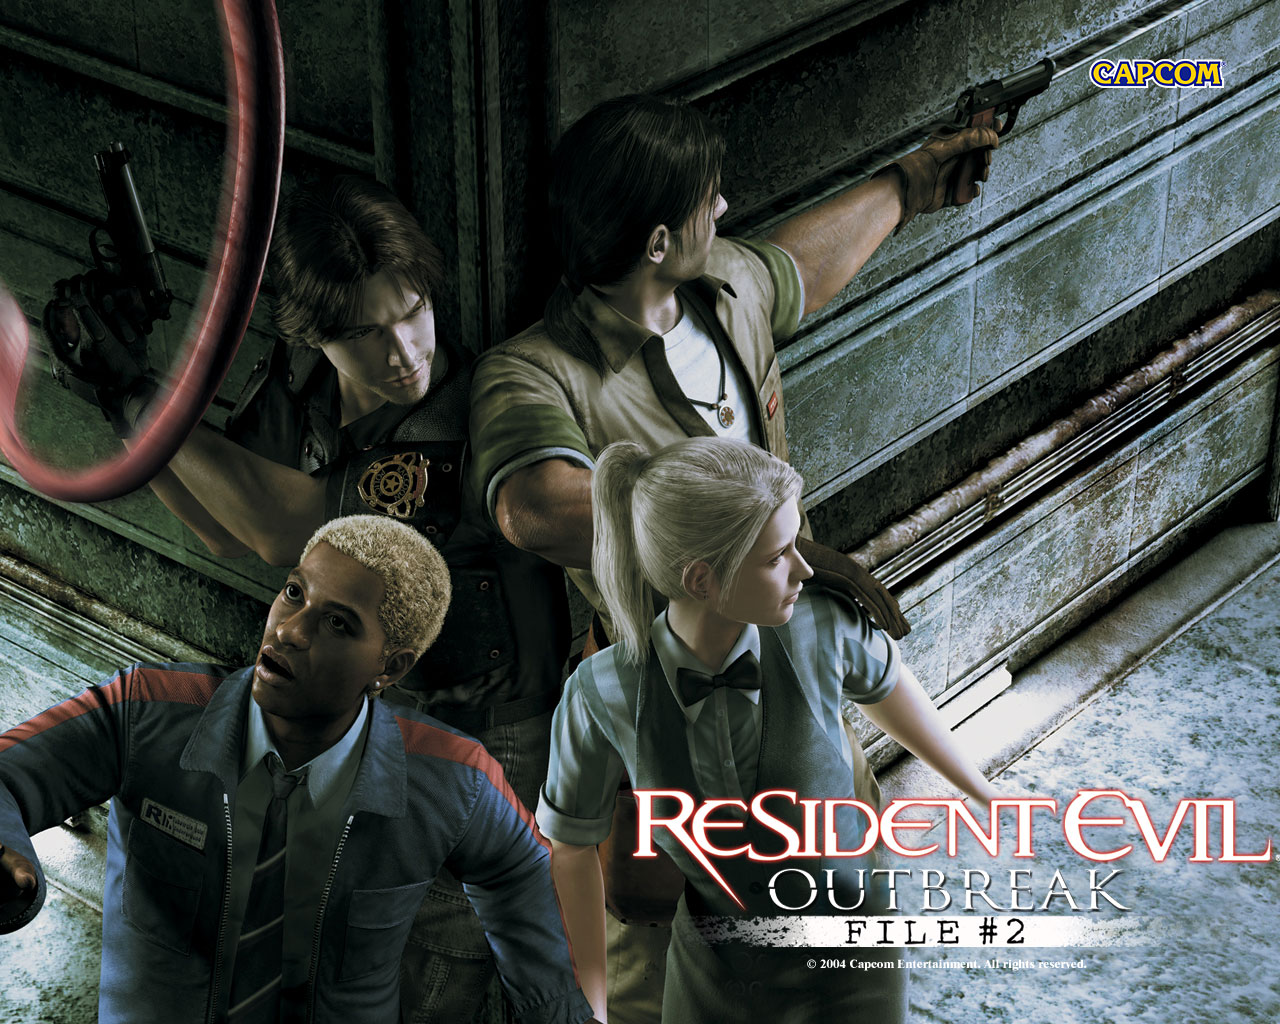 16. Resident Evil Outbreak File #2